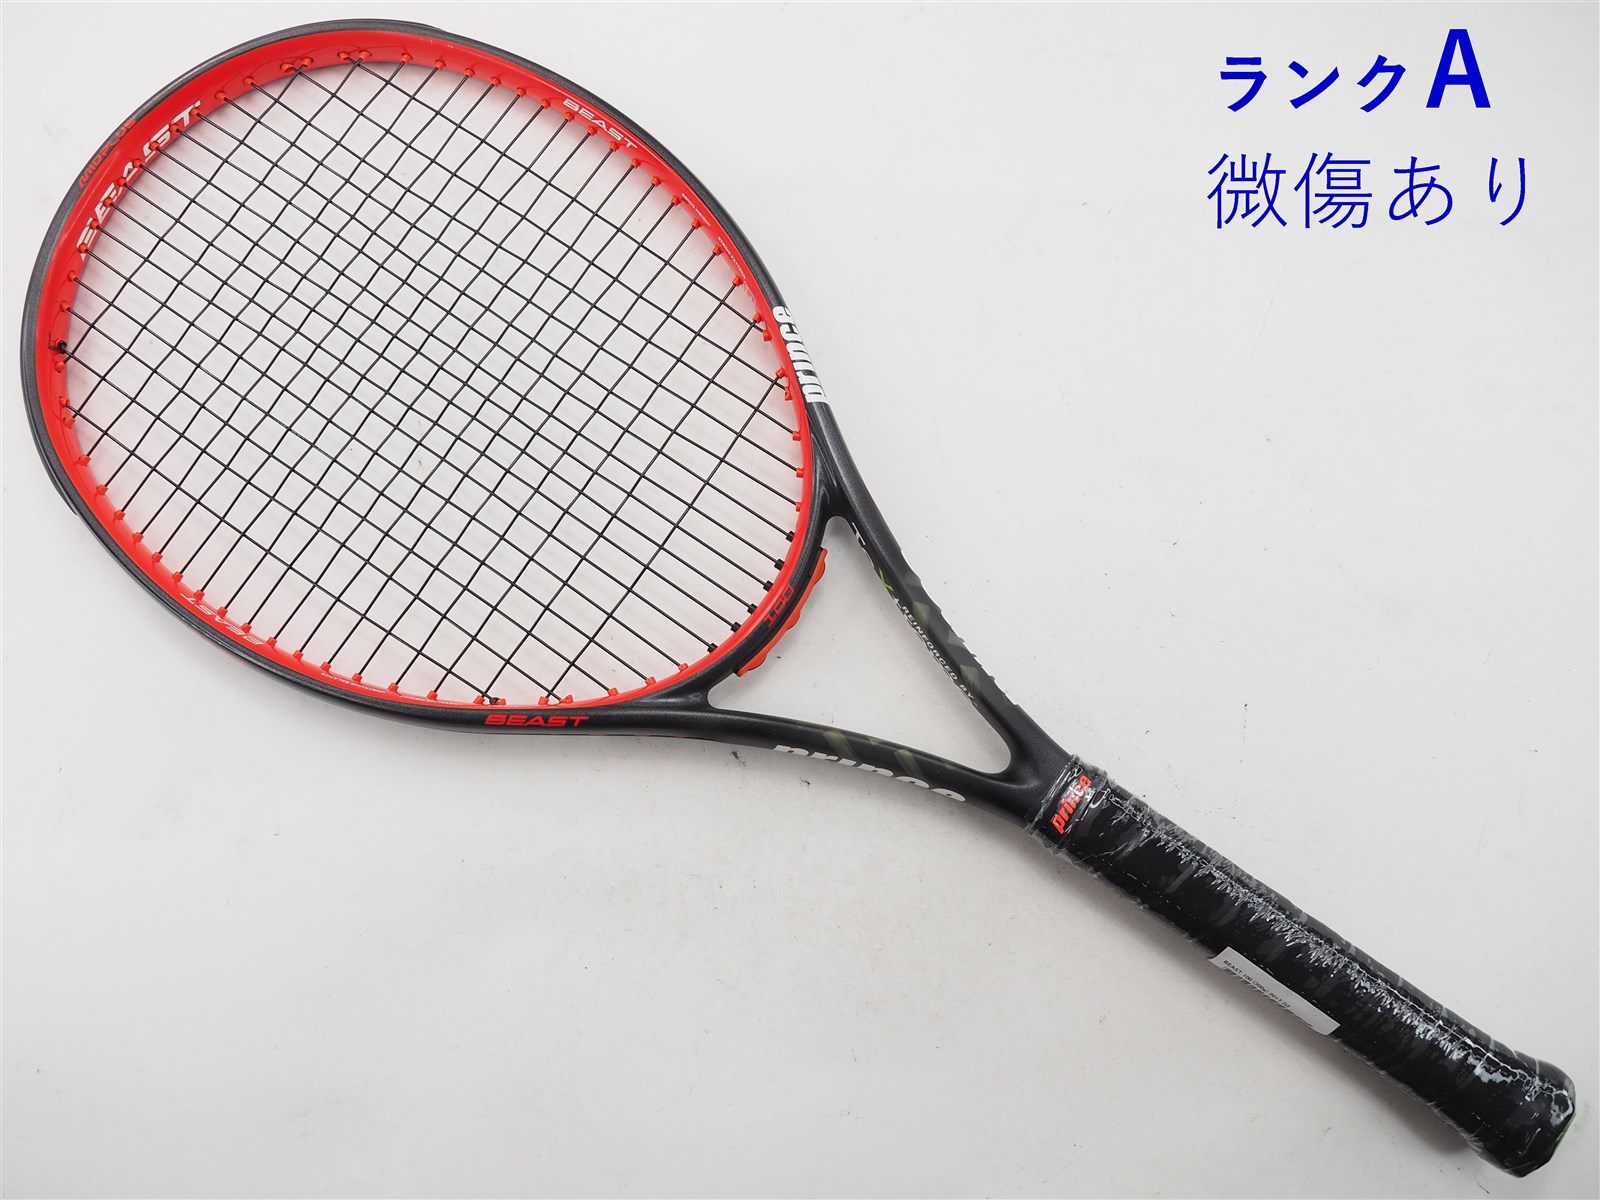 テニスラケット プリンス ビースト 100 (300g) 2017年モデル (G2 ...